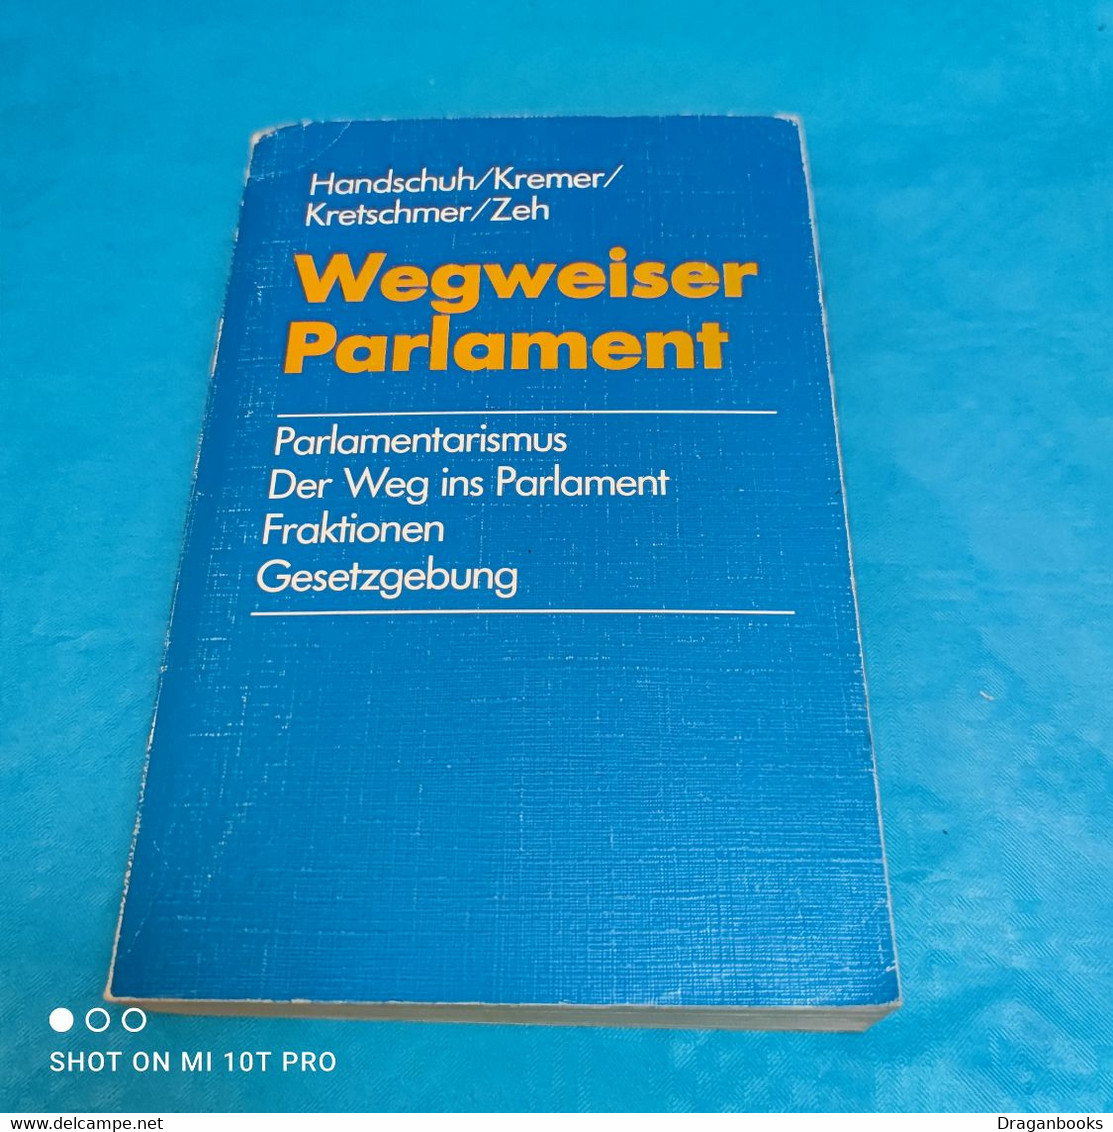 Handschuh U.a. - Wegweiser Parlament - Hedendaagse Politiek